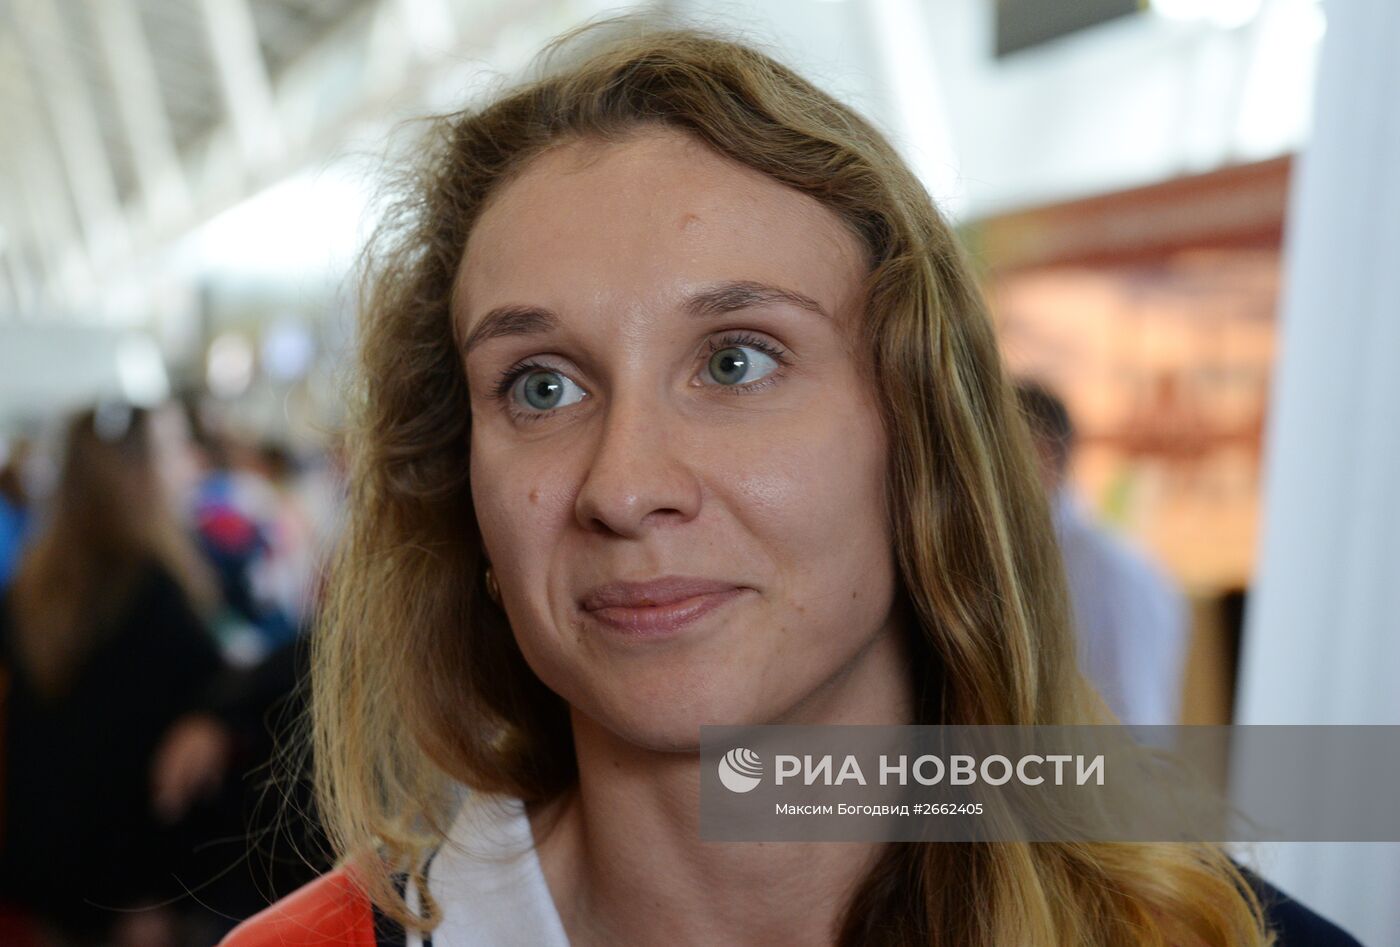 Сборная России прибыла на чемпионат мира FINA 2015